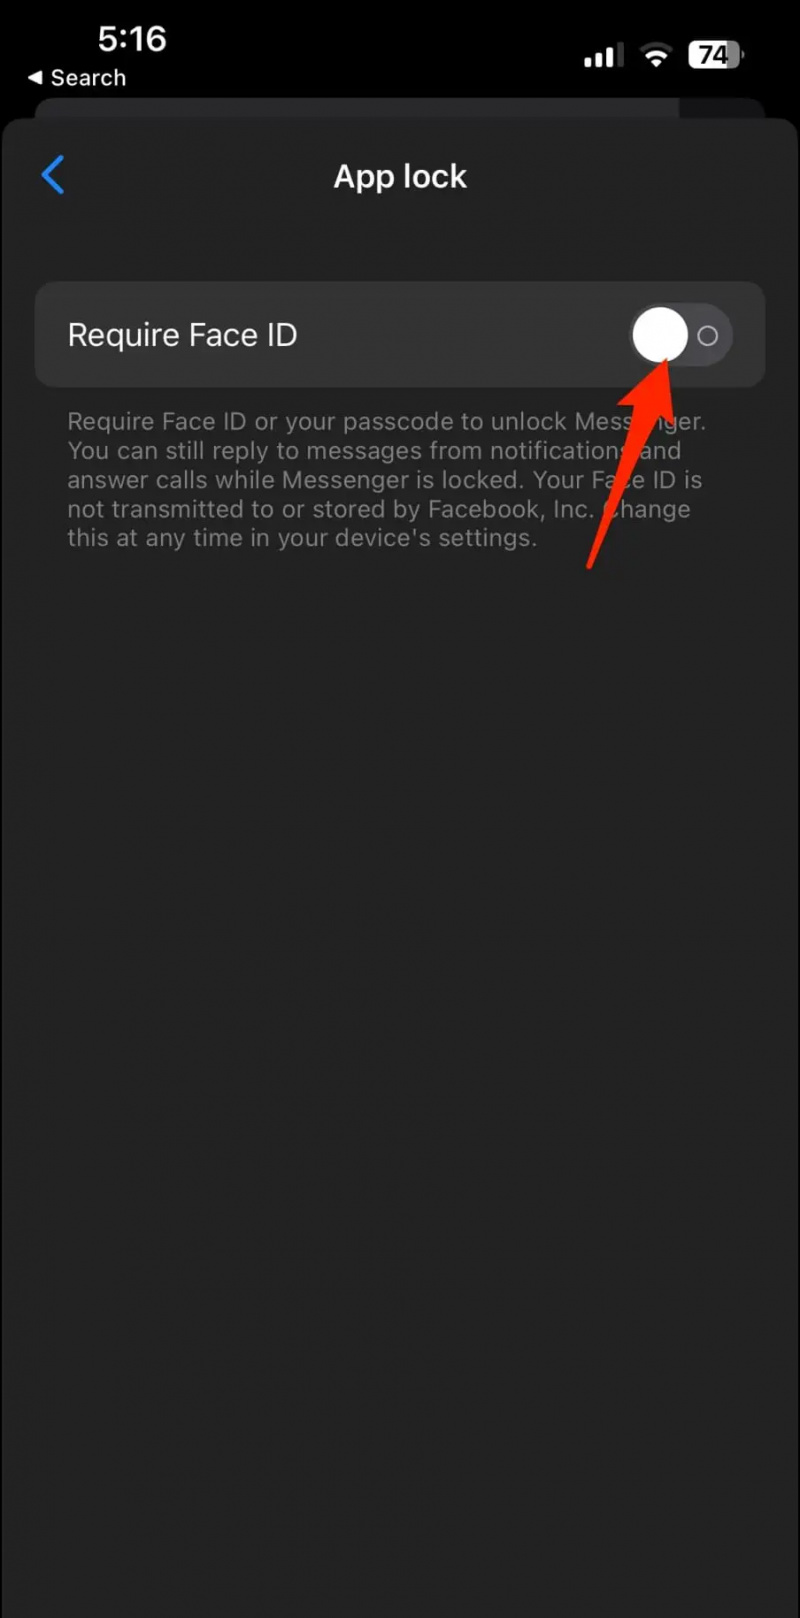   Blocca l'app Messenger su iPhone